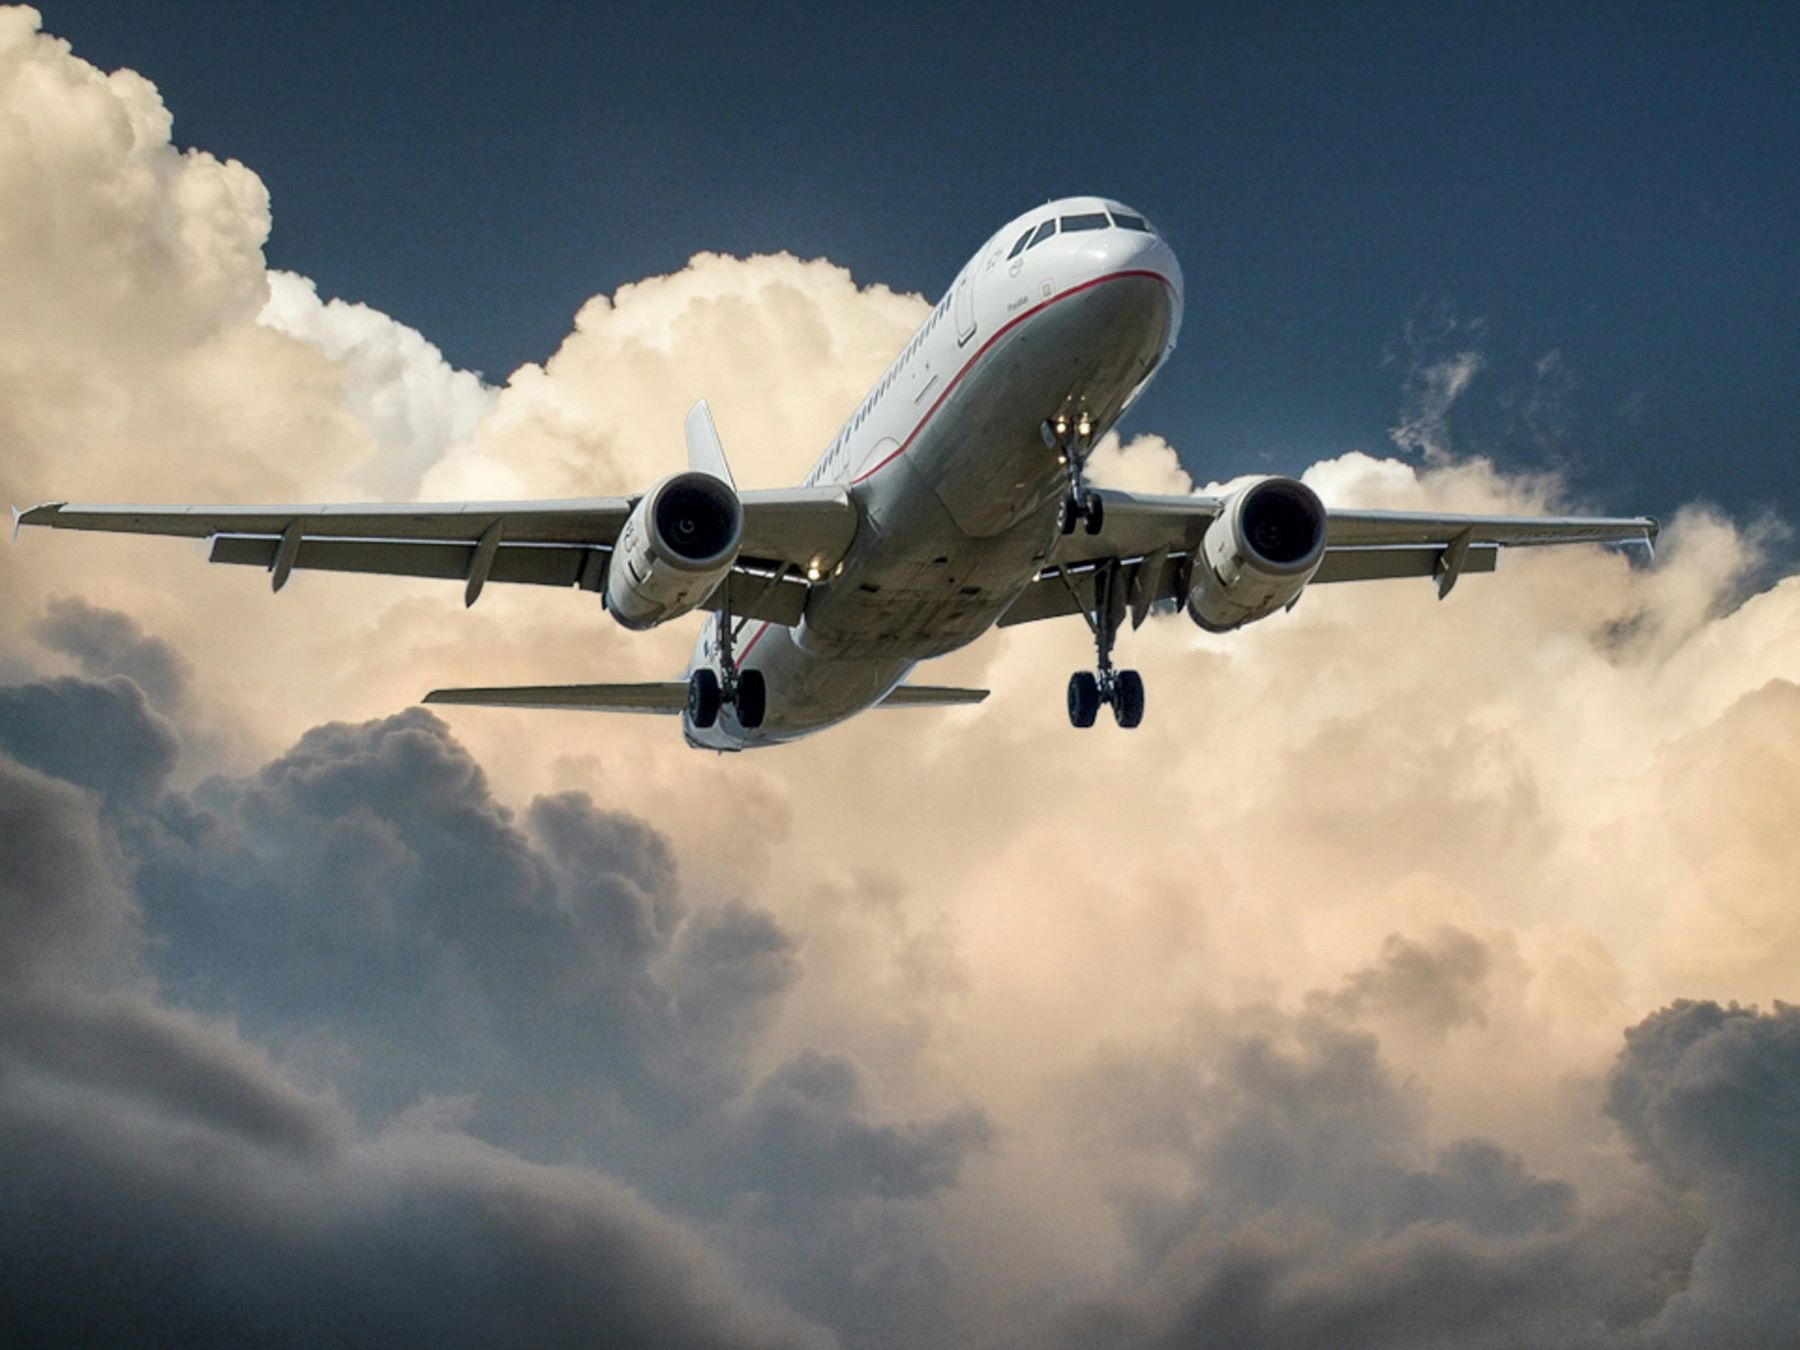 Προσγείωση αεροπλάνου – AirAsia: Πανικός σε πτήση λόγω διακοπής ρεύματος στην απογείωση